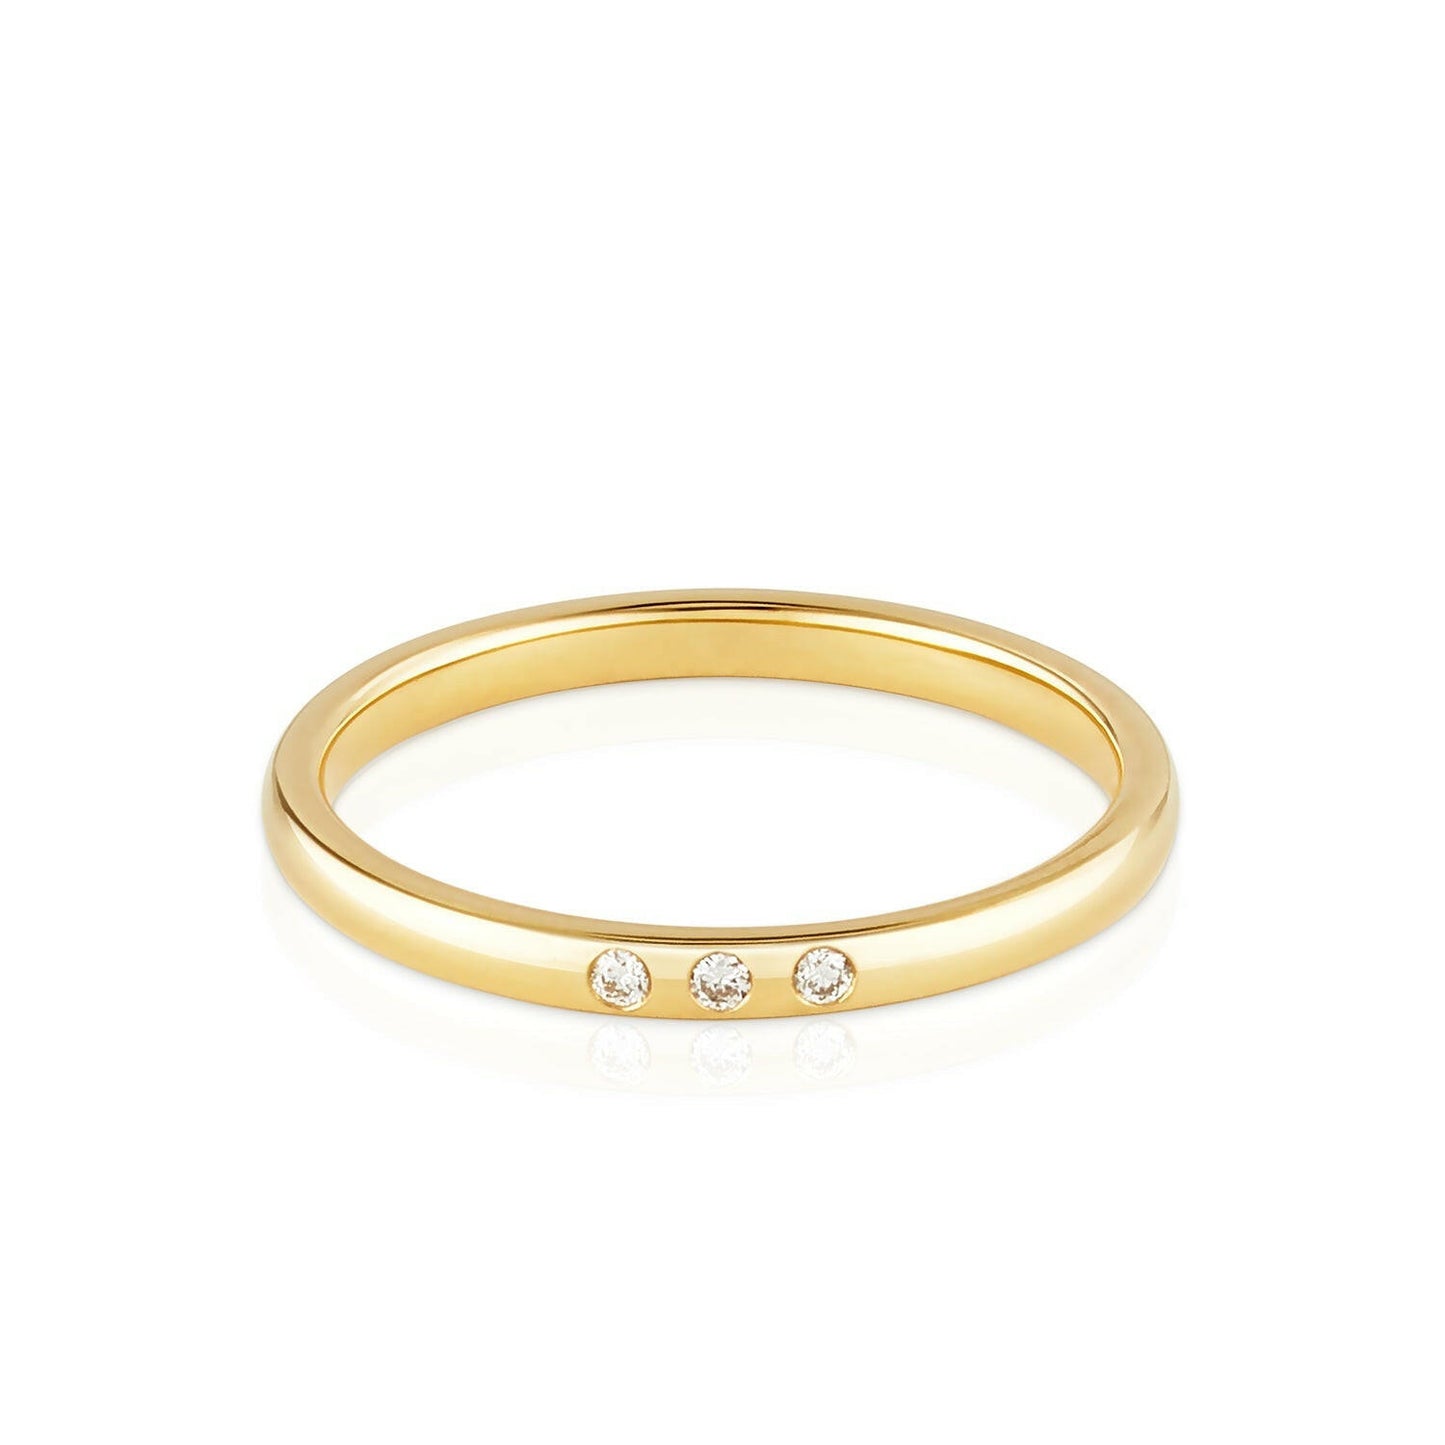 Kim ist ein Ring aus recyceltem Geldbgold und labor Diamanten von Zola Berlin.